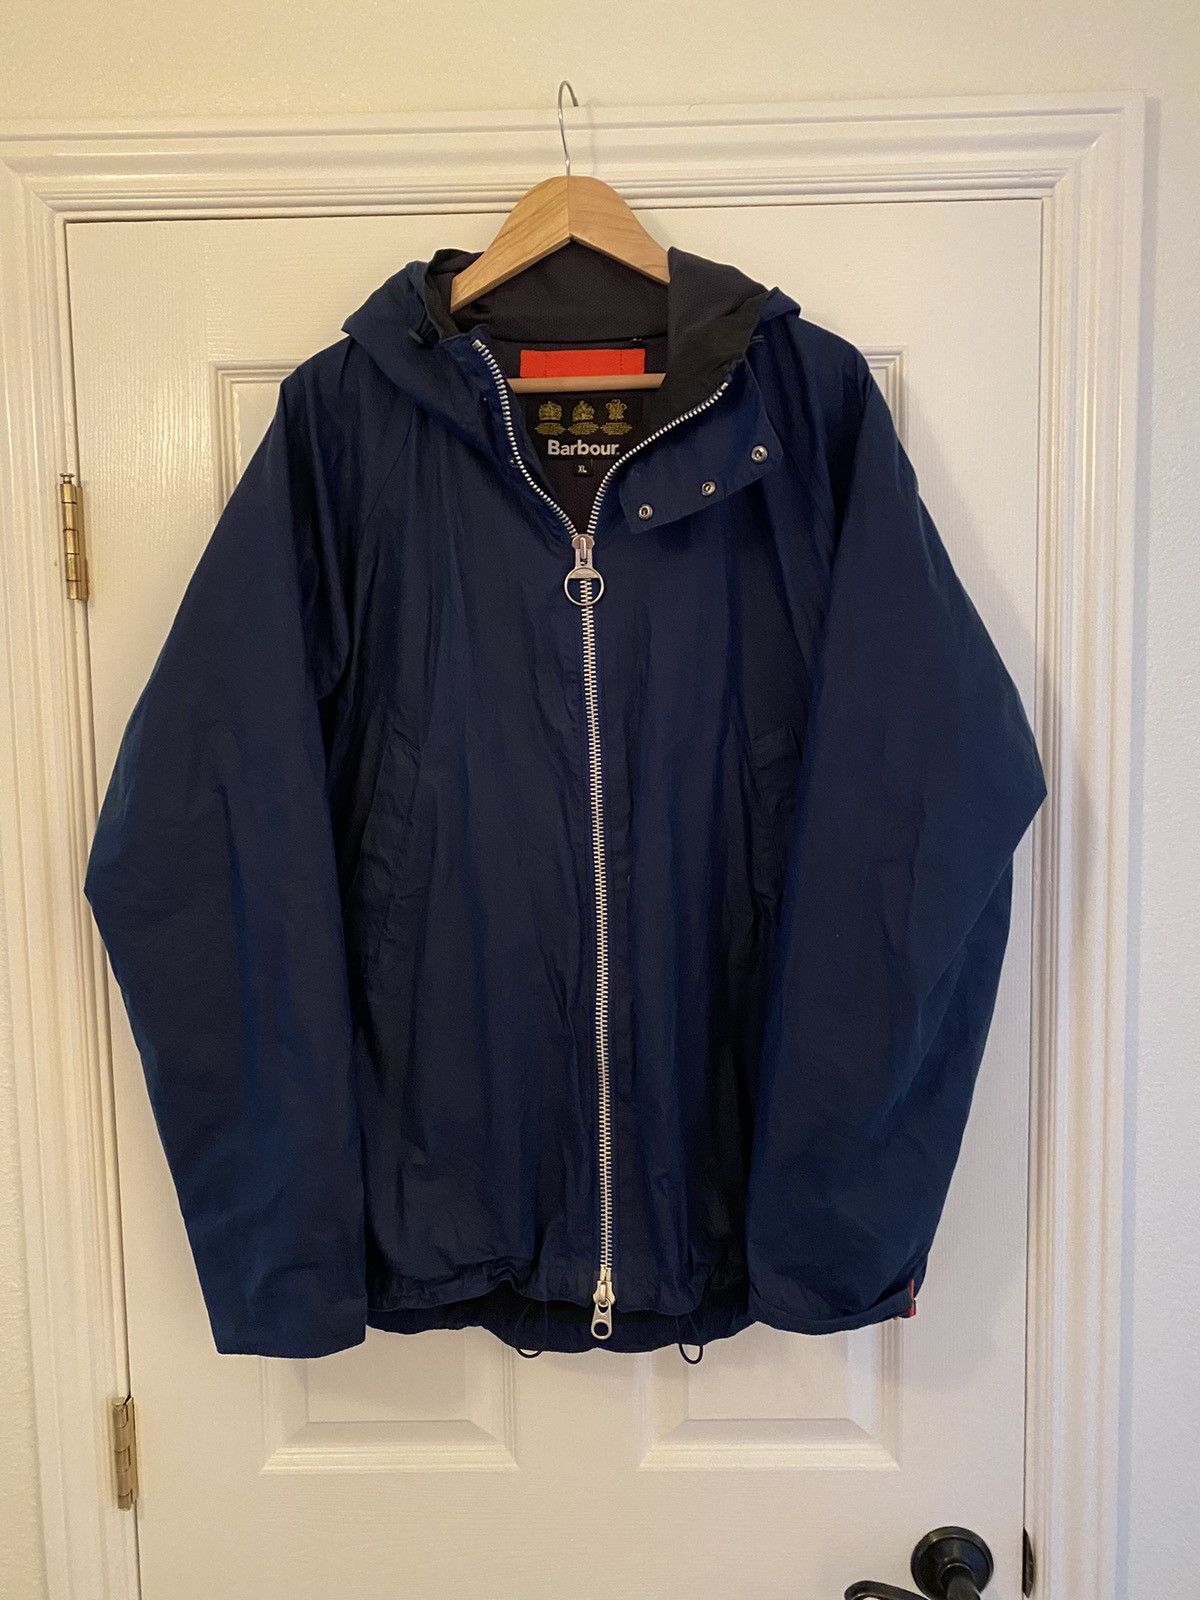 Barbour Barbour Orta Wax Cotton Jacket, Blue, XL | Grailed